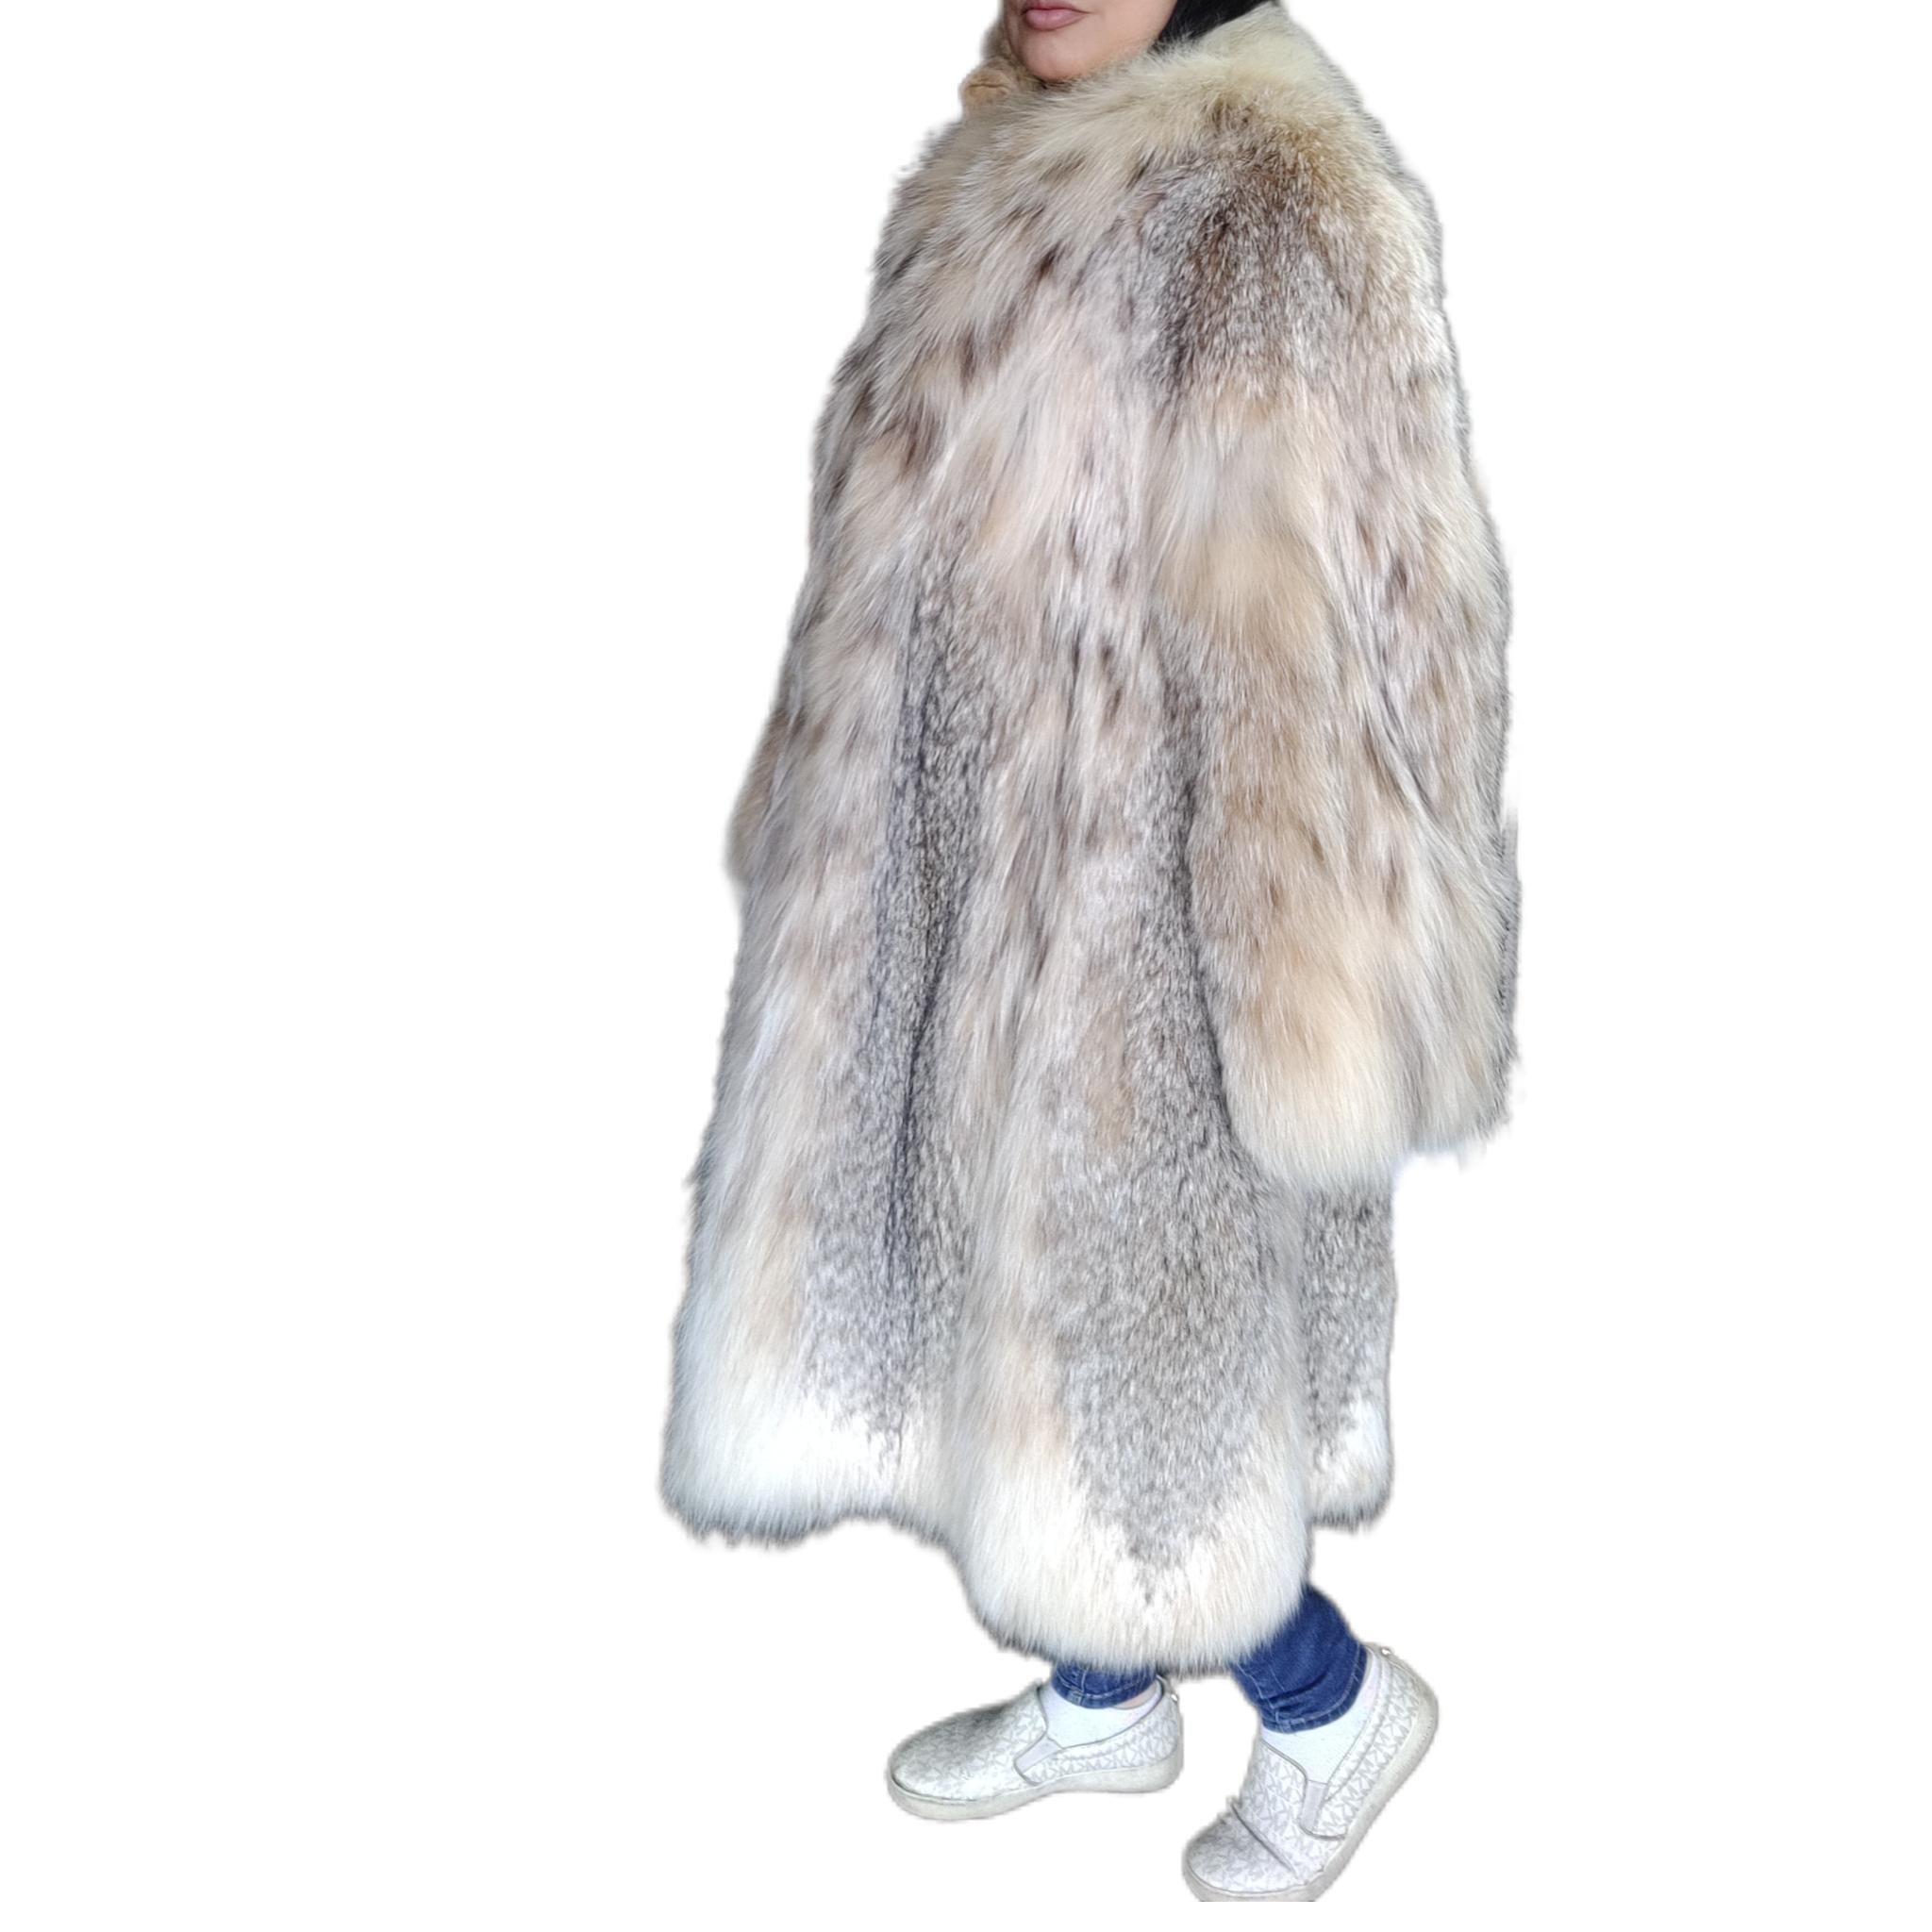 DESCRIPTION : Manteau de fourrure de lynx canadien neuf, taille 14 L

Col tailleur, manches droites, peaux souples, belle fourrure fraîche, fermoirs européens allemands pour la fermeture, deux poches fendues, belles grandes peaux pleines en état